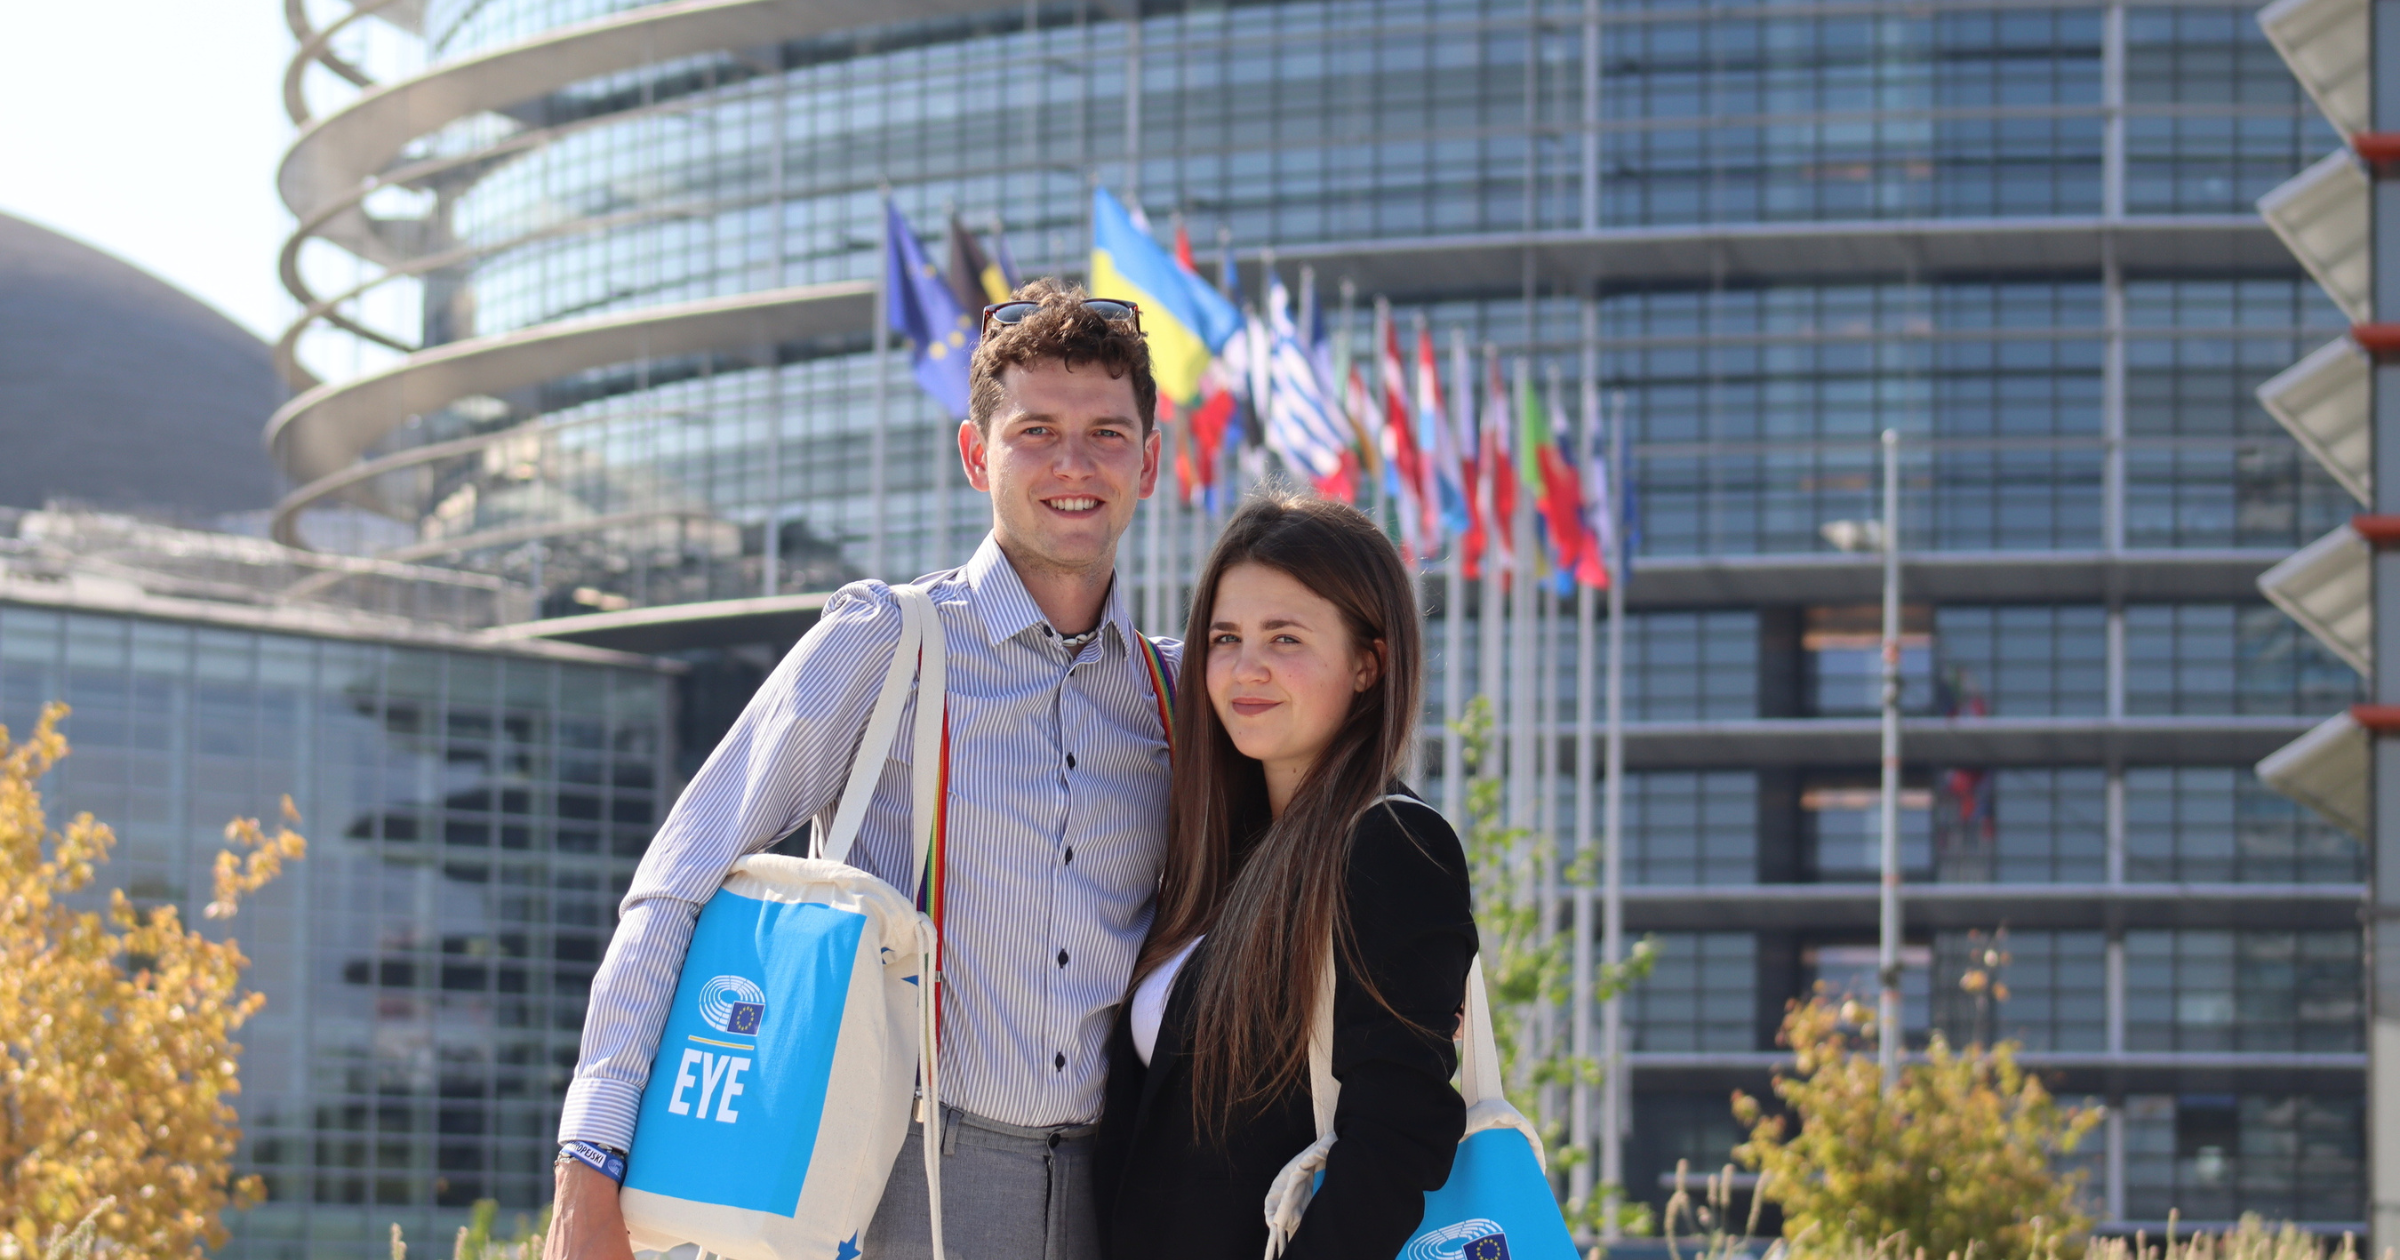 Euroučni Tomáš Novotný a Tereza Burďáková reprezentující Českou republiku na akci European Youth Event (EYE).